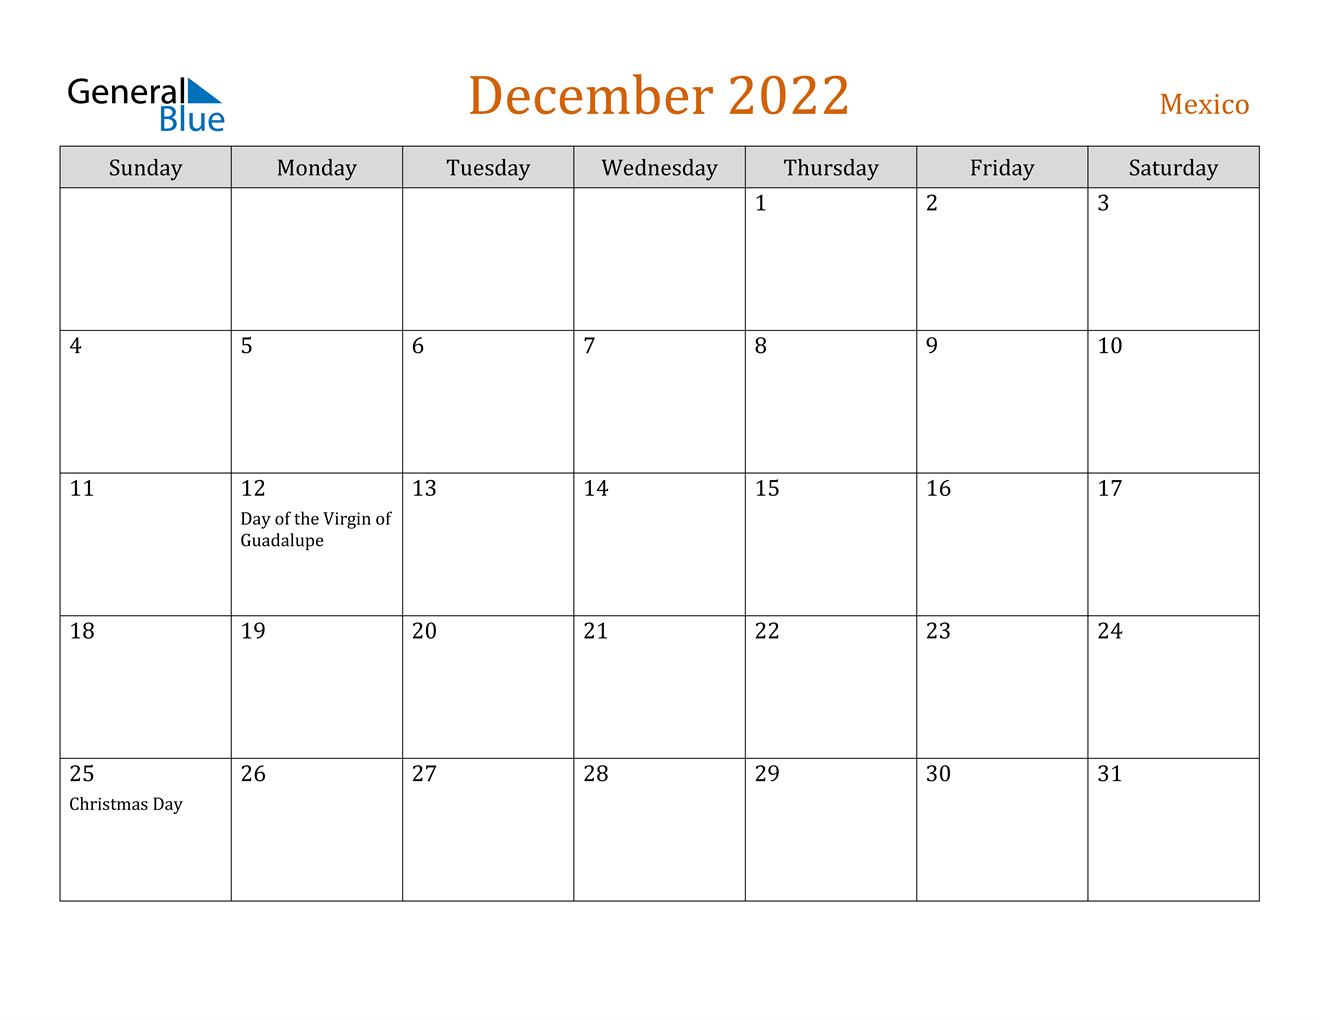 December 2022 Calendar - Mexico  Free Printable Calendar 2022 December